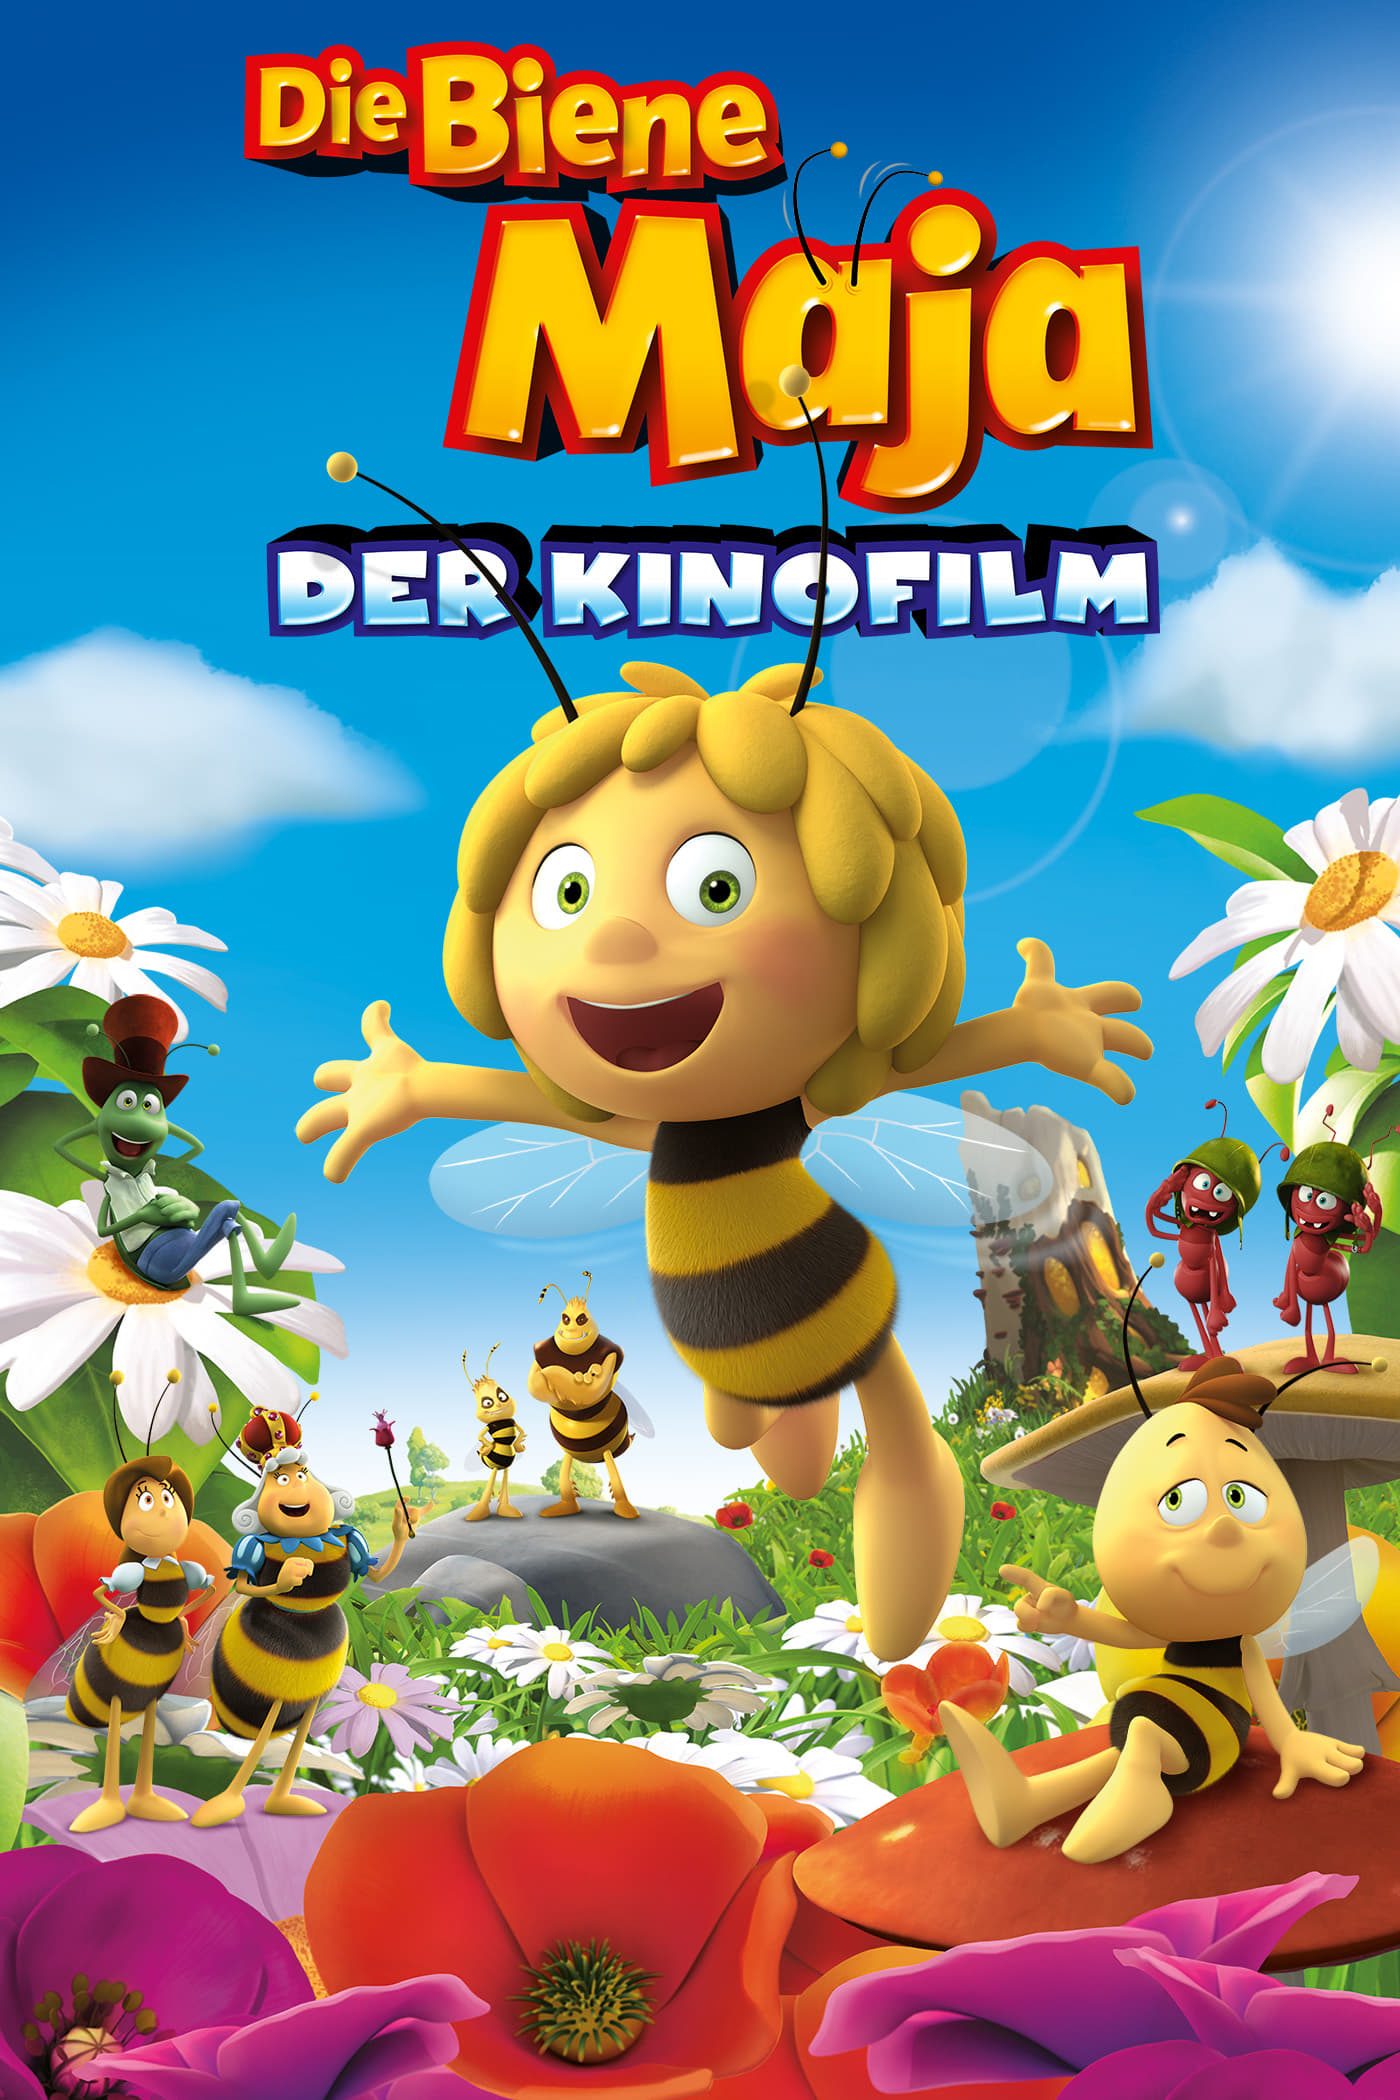 Plakat von "Die Biene Maja - Der Kinofilm"